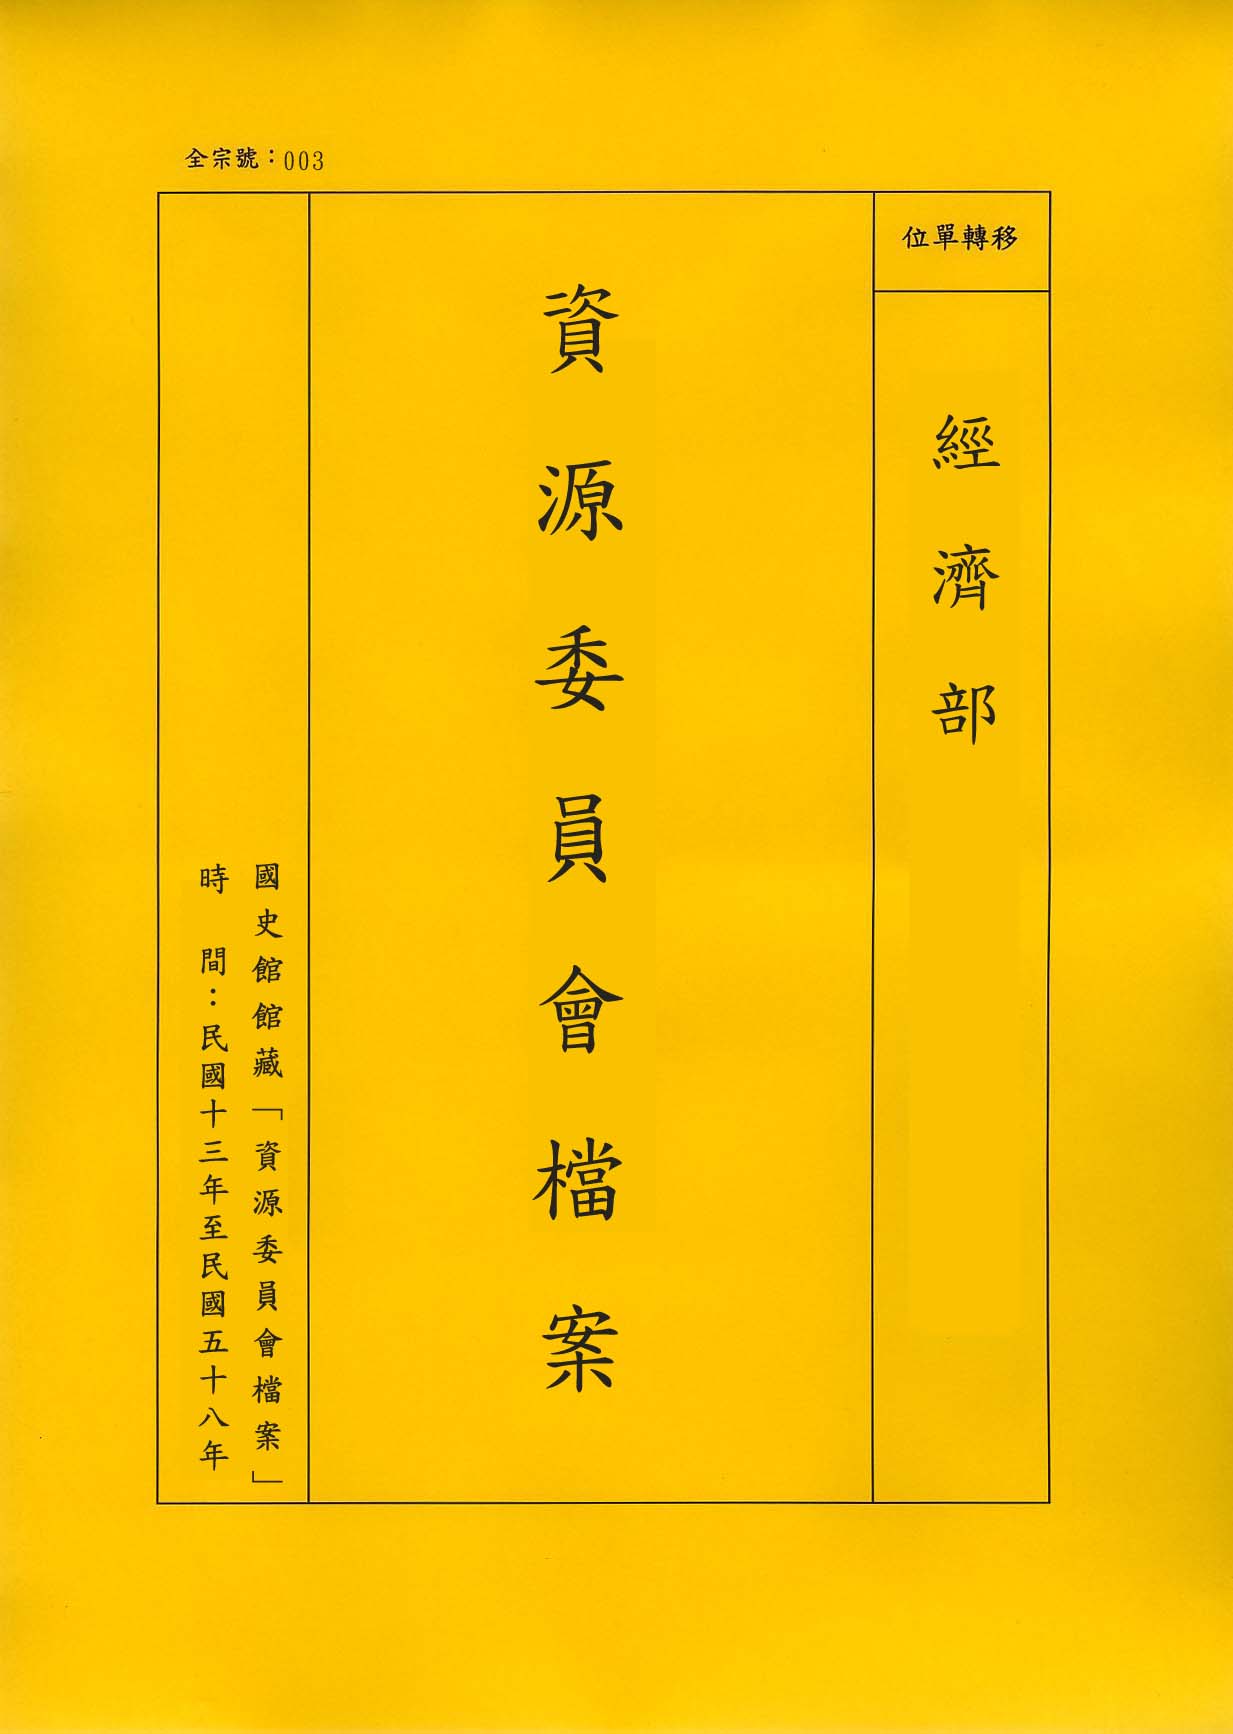 卷名:化學類工廠登記卡片─遼寧遼北安東(003-010304-0247)